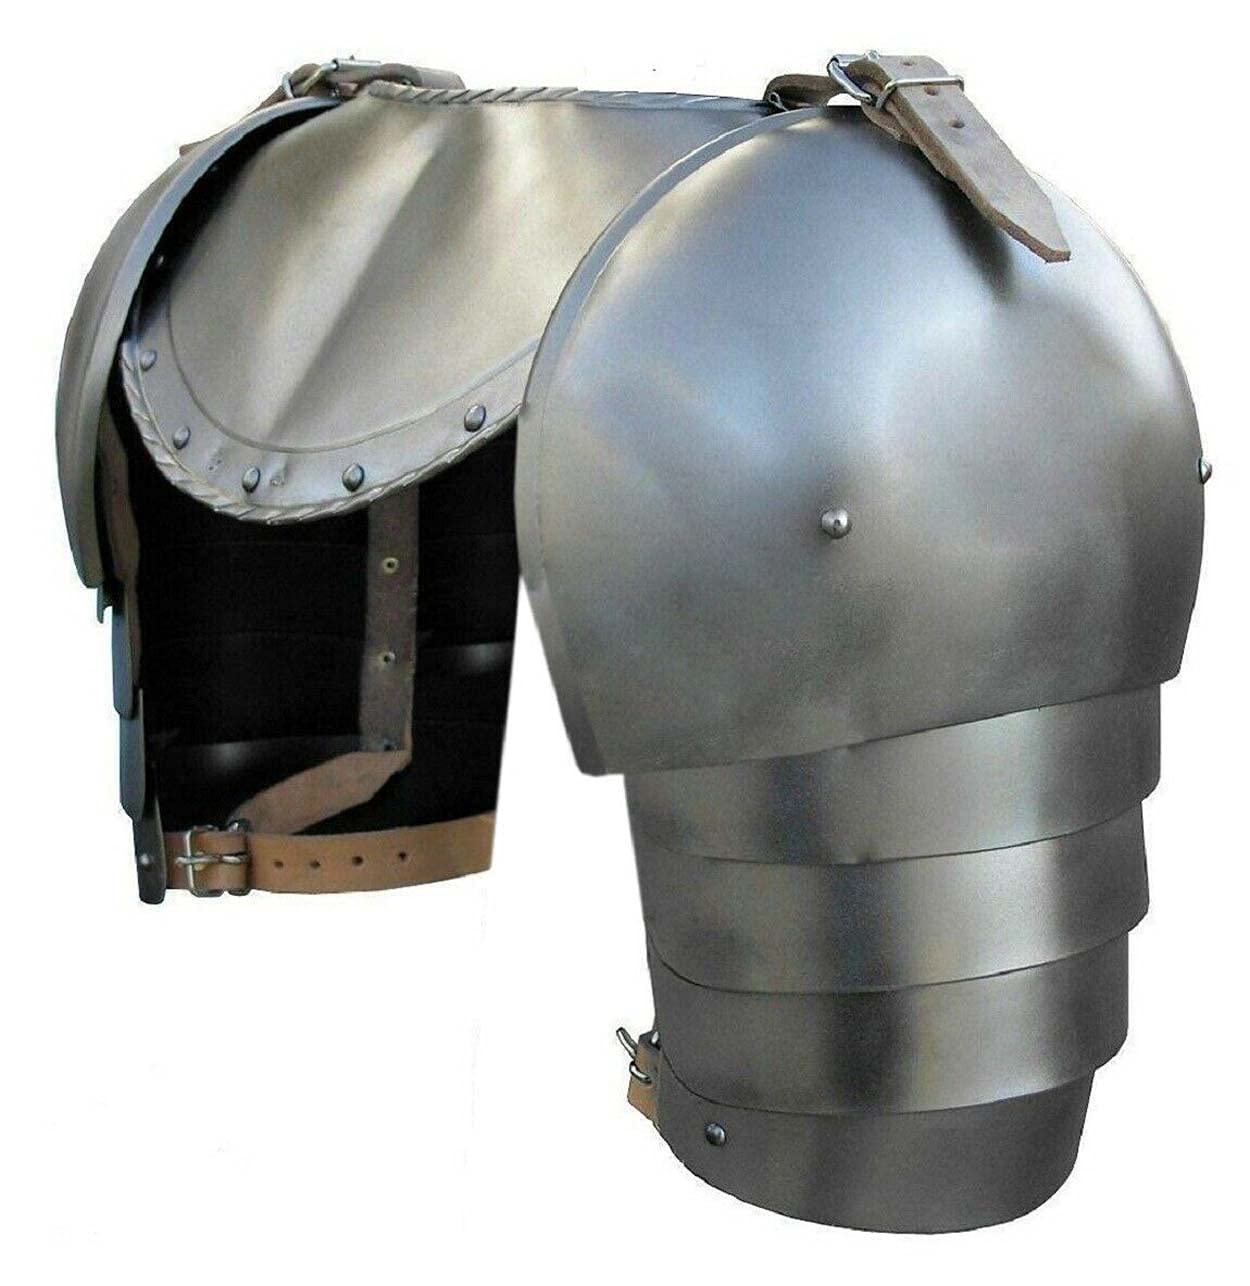 Steel 18 Gauge Shoulder Armor Pauldron and Gorget Set